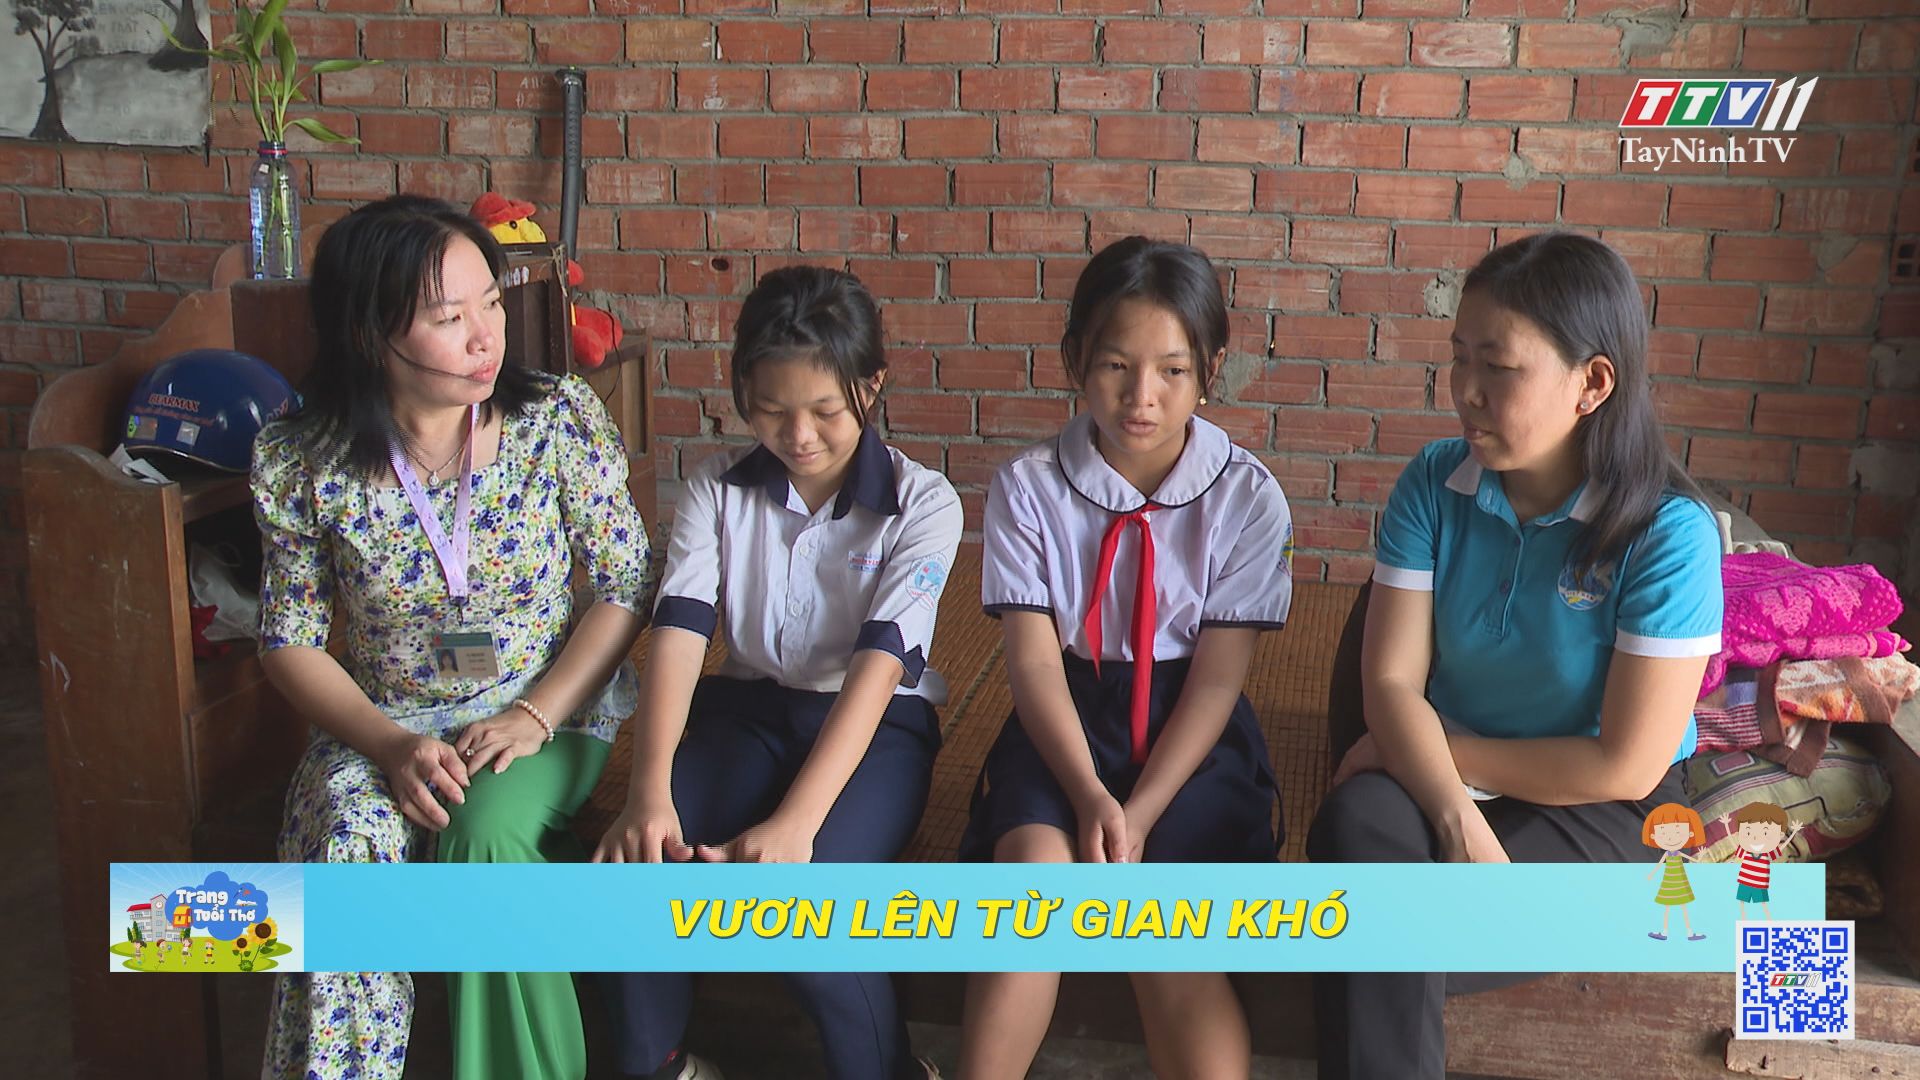 Vươn lên từ gian khó | Trang tuổi thơ | TayNinhTV